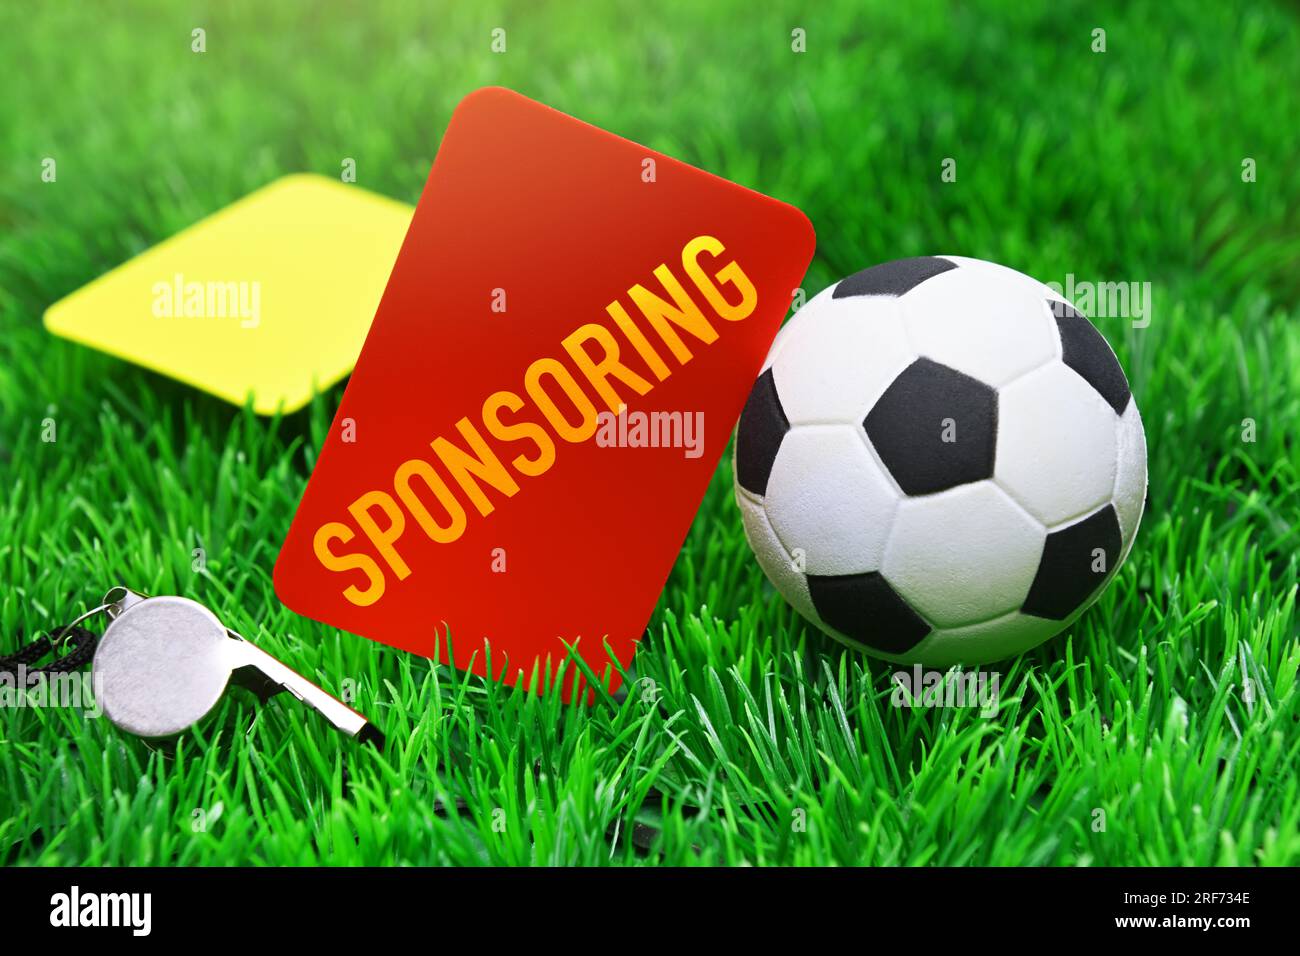 FOTOMONTAGE, Rote Karte mit Aufschrift Sponsoring neben Fußball auf Fußballrasen, Symbolfoto Kündigung von Sponsoring-Verträgen Stock Photo